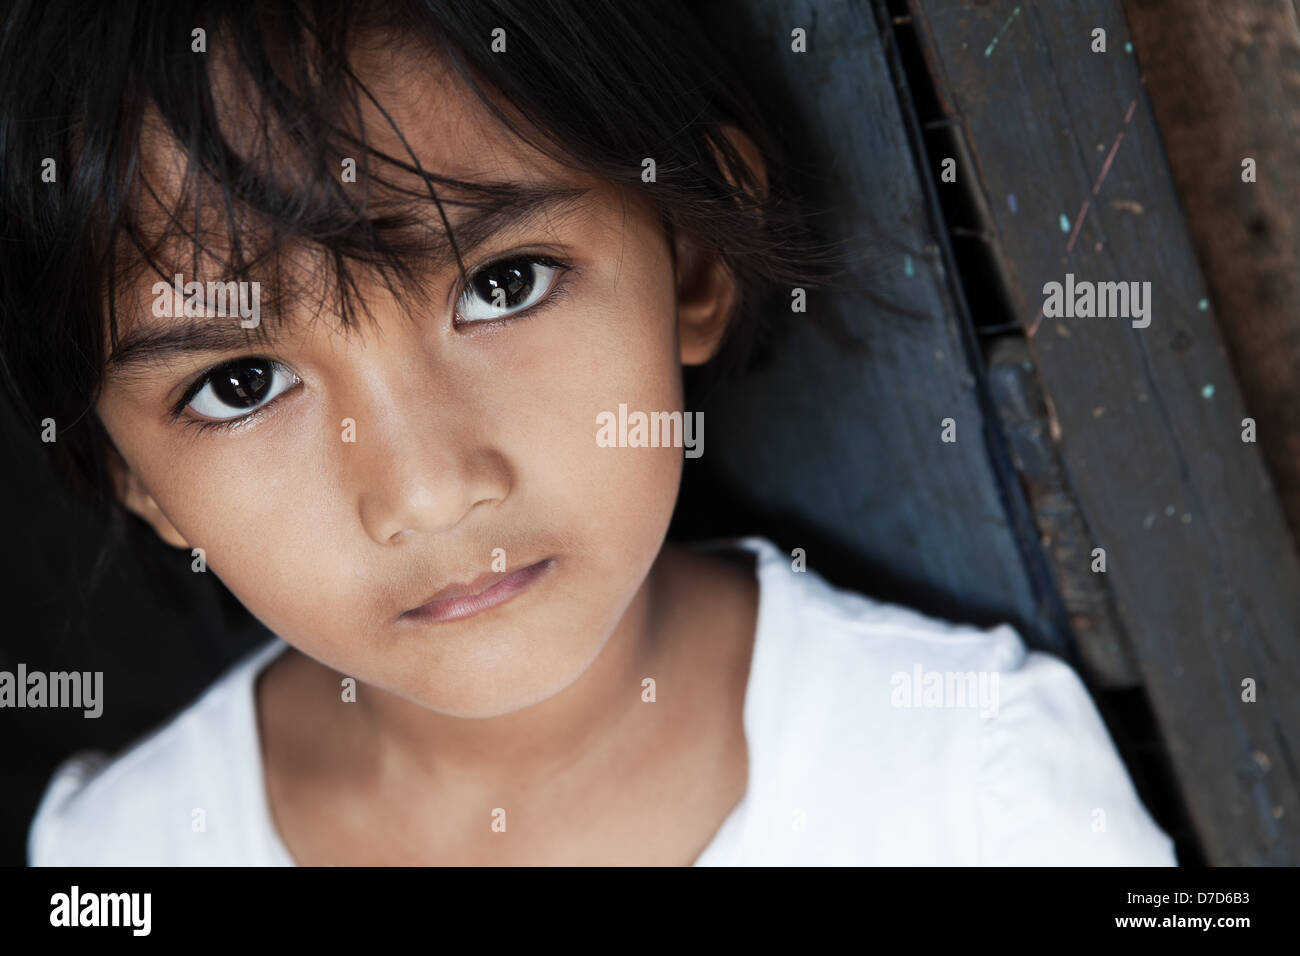 Portrait d'une jolie jeune fille asiatique - Manille, Philippines - lumière naturelle Banque D'Images